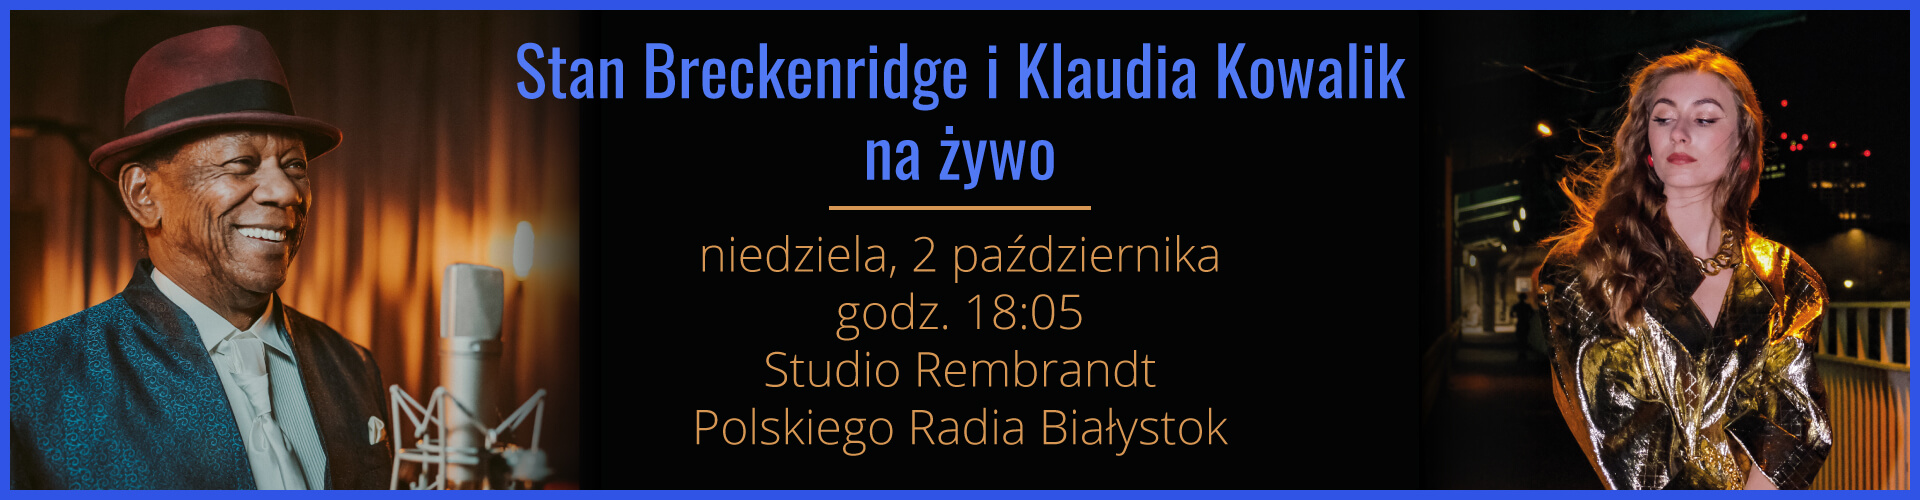 Stan Breckenridge i Klaudia Kowalik w Polskim Radiu Białystok